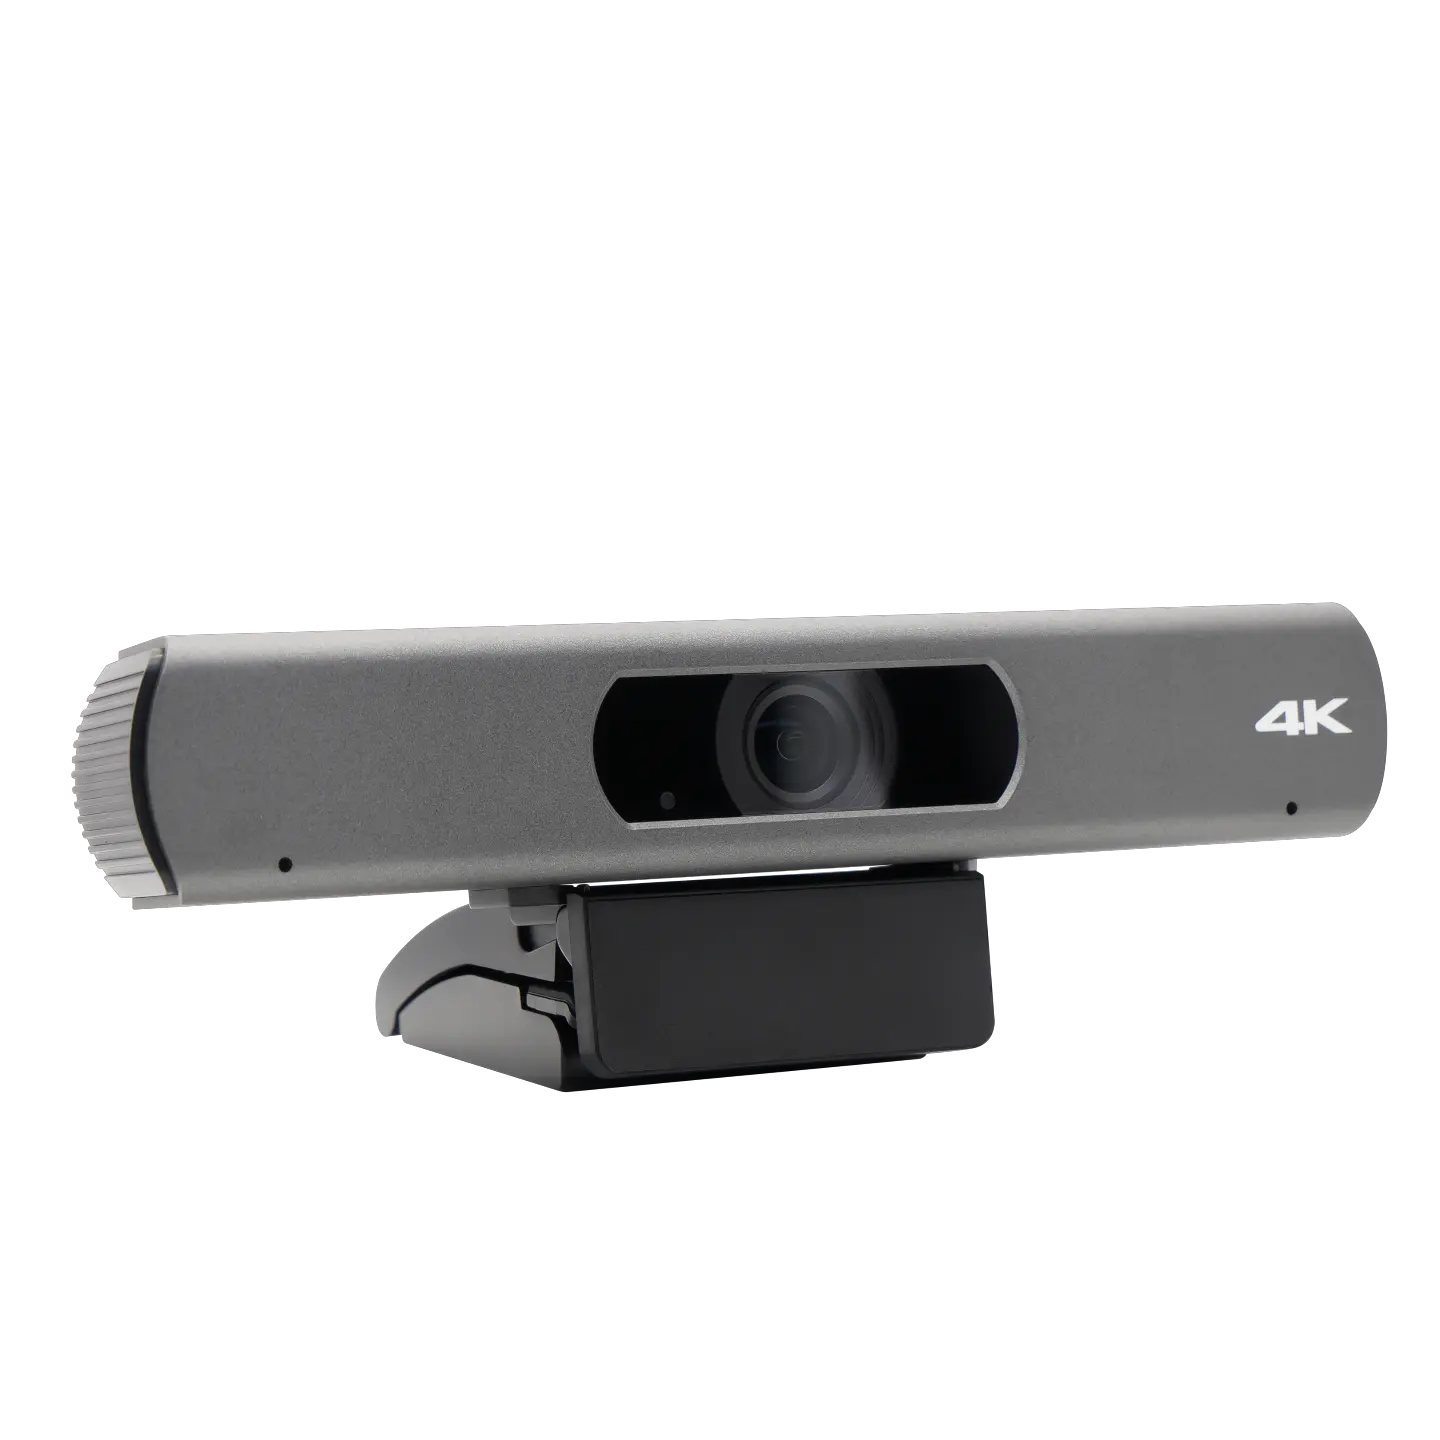 מצלמה 4K זווית 120 עם שלט רחוק למיקרופון עבור לוחות אינטראקטיביים לכנס התומכים ב-EPTZ